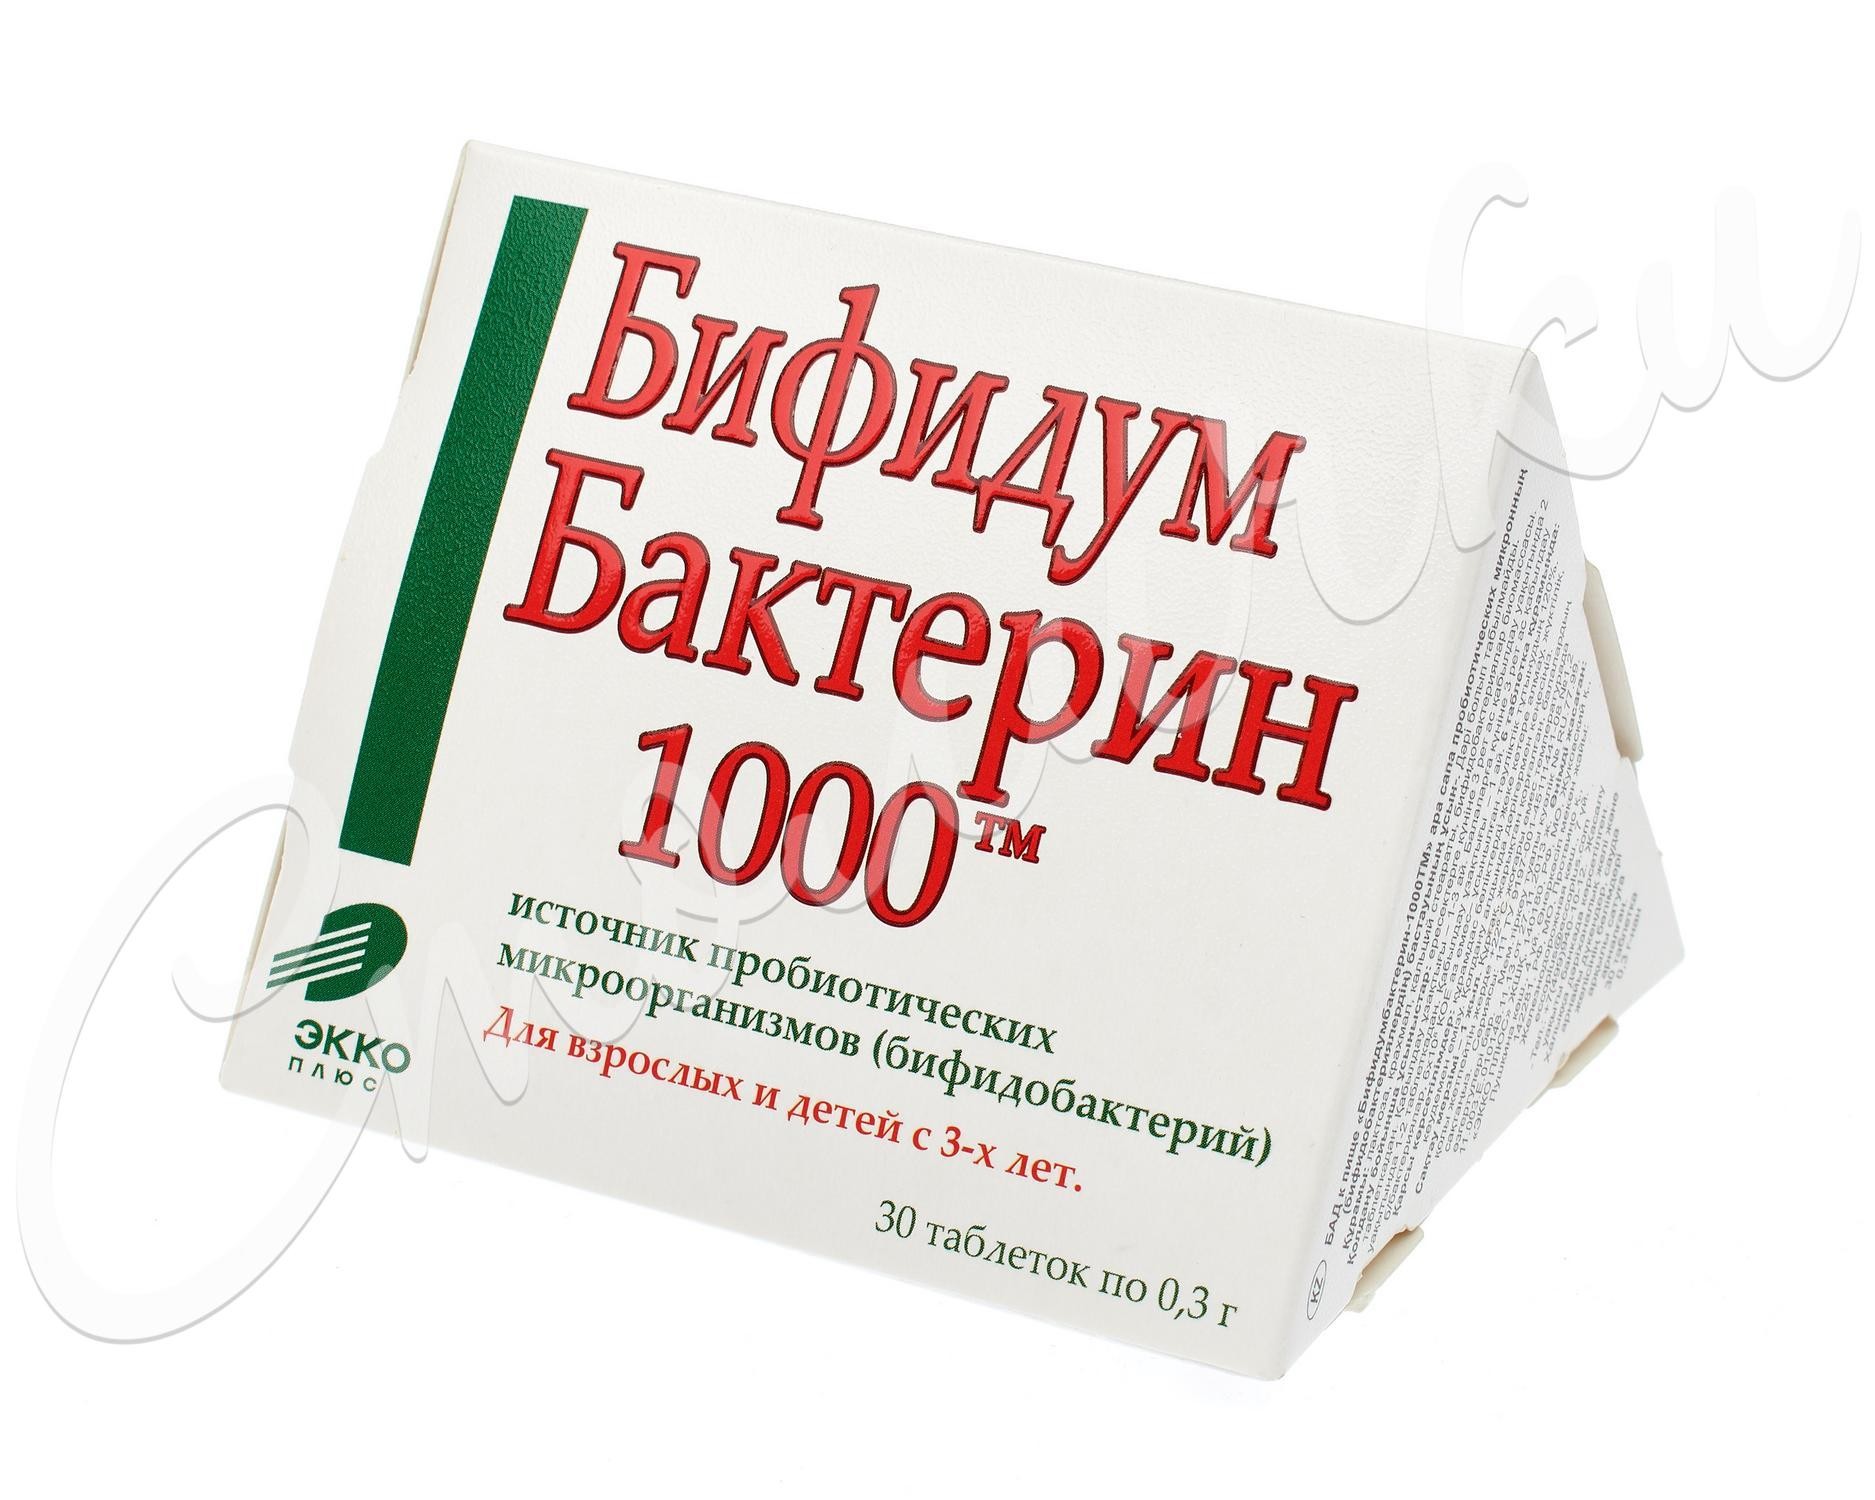 1000 таблетка ру